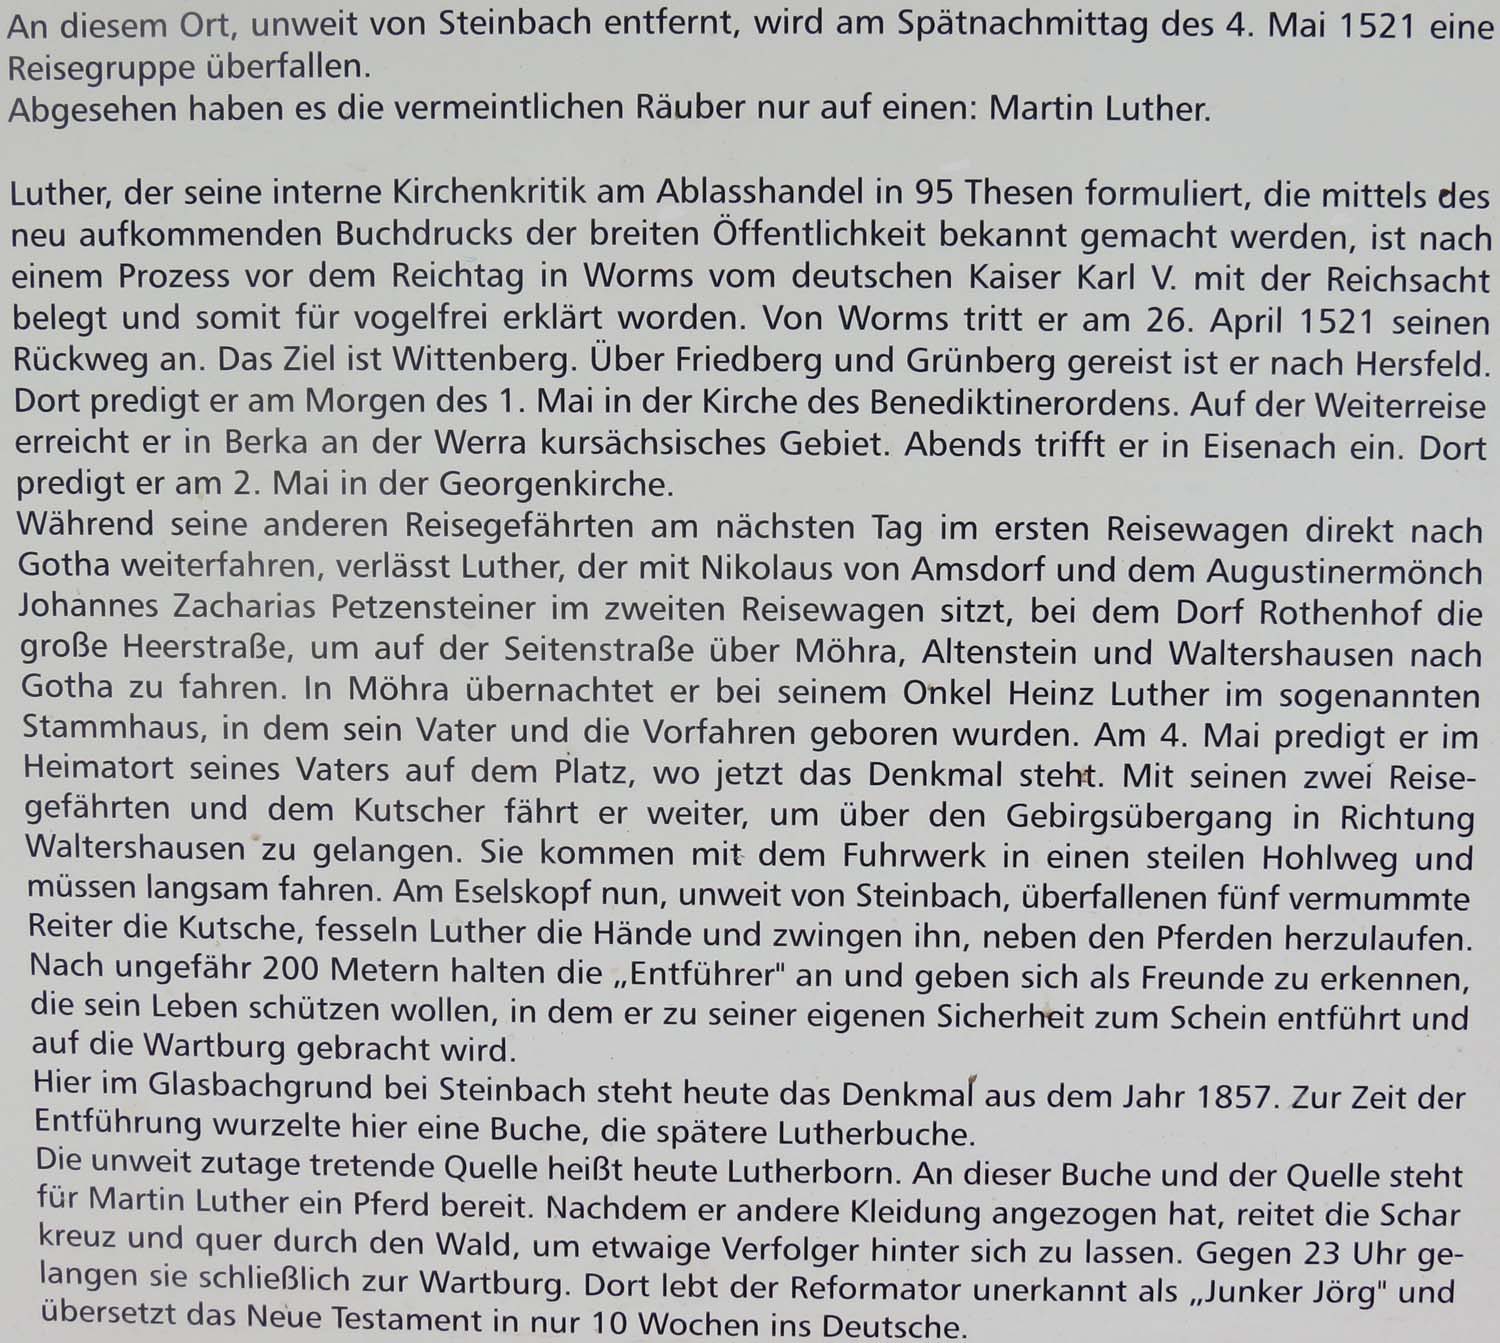 Text an einer Schautafel in der Nähe von Steinbach